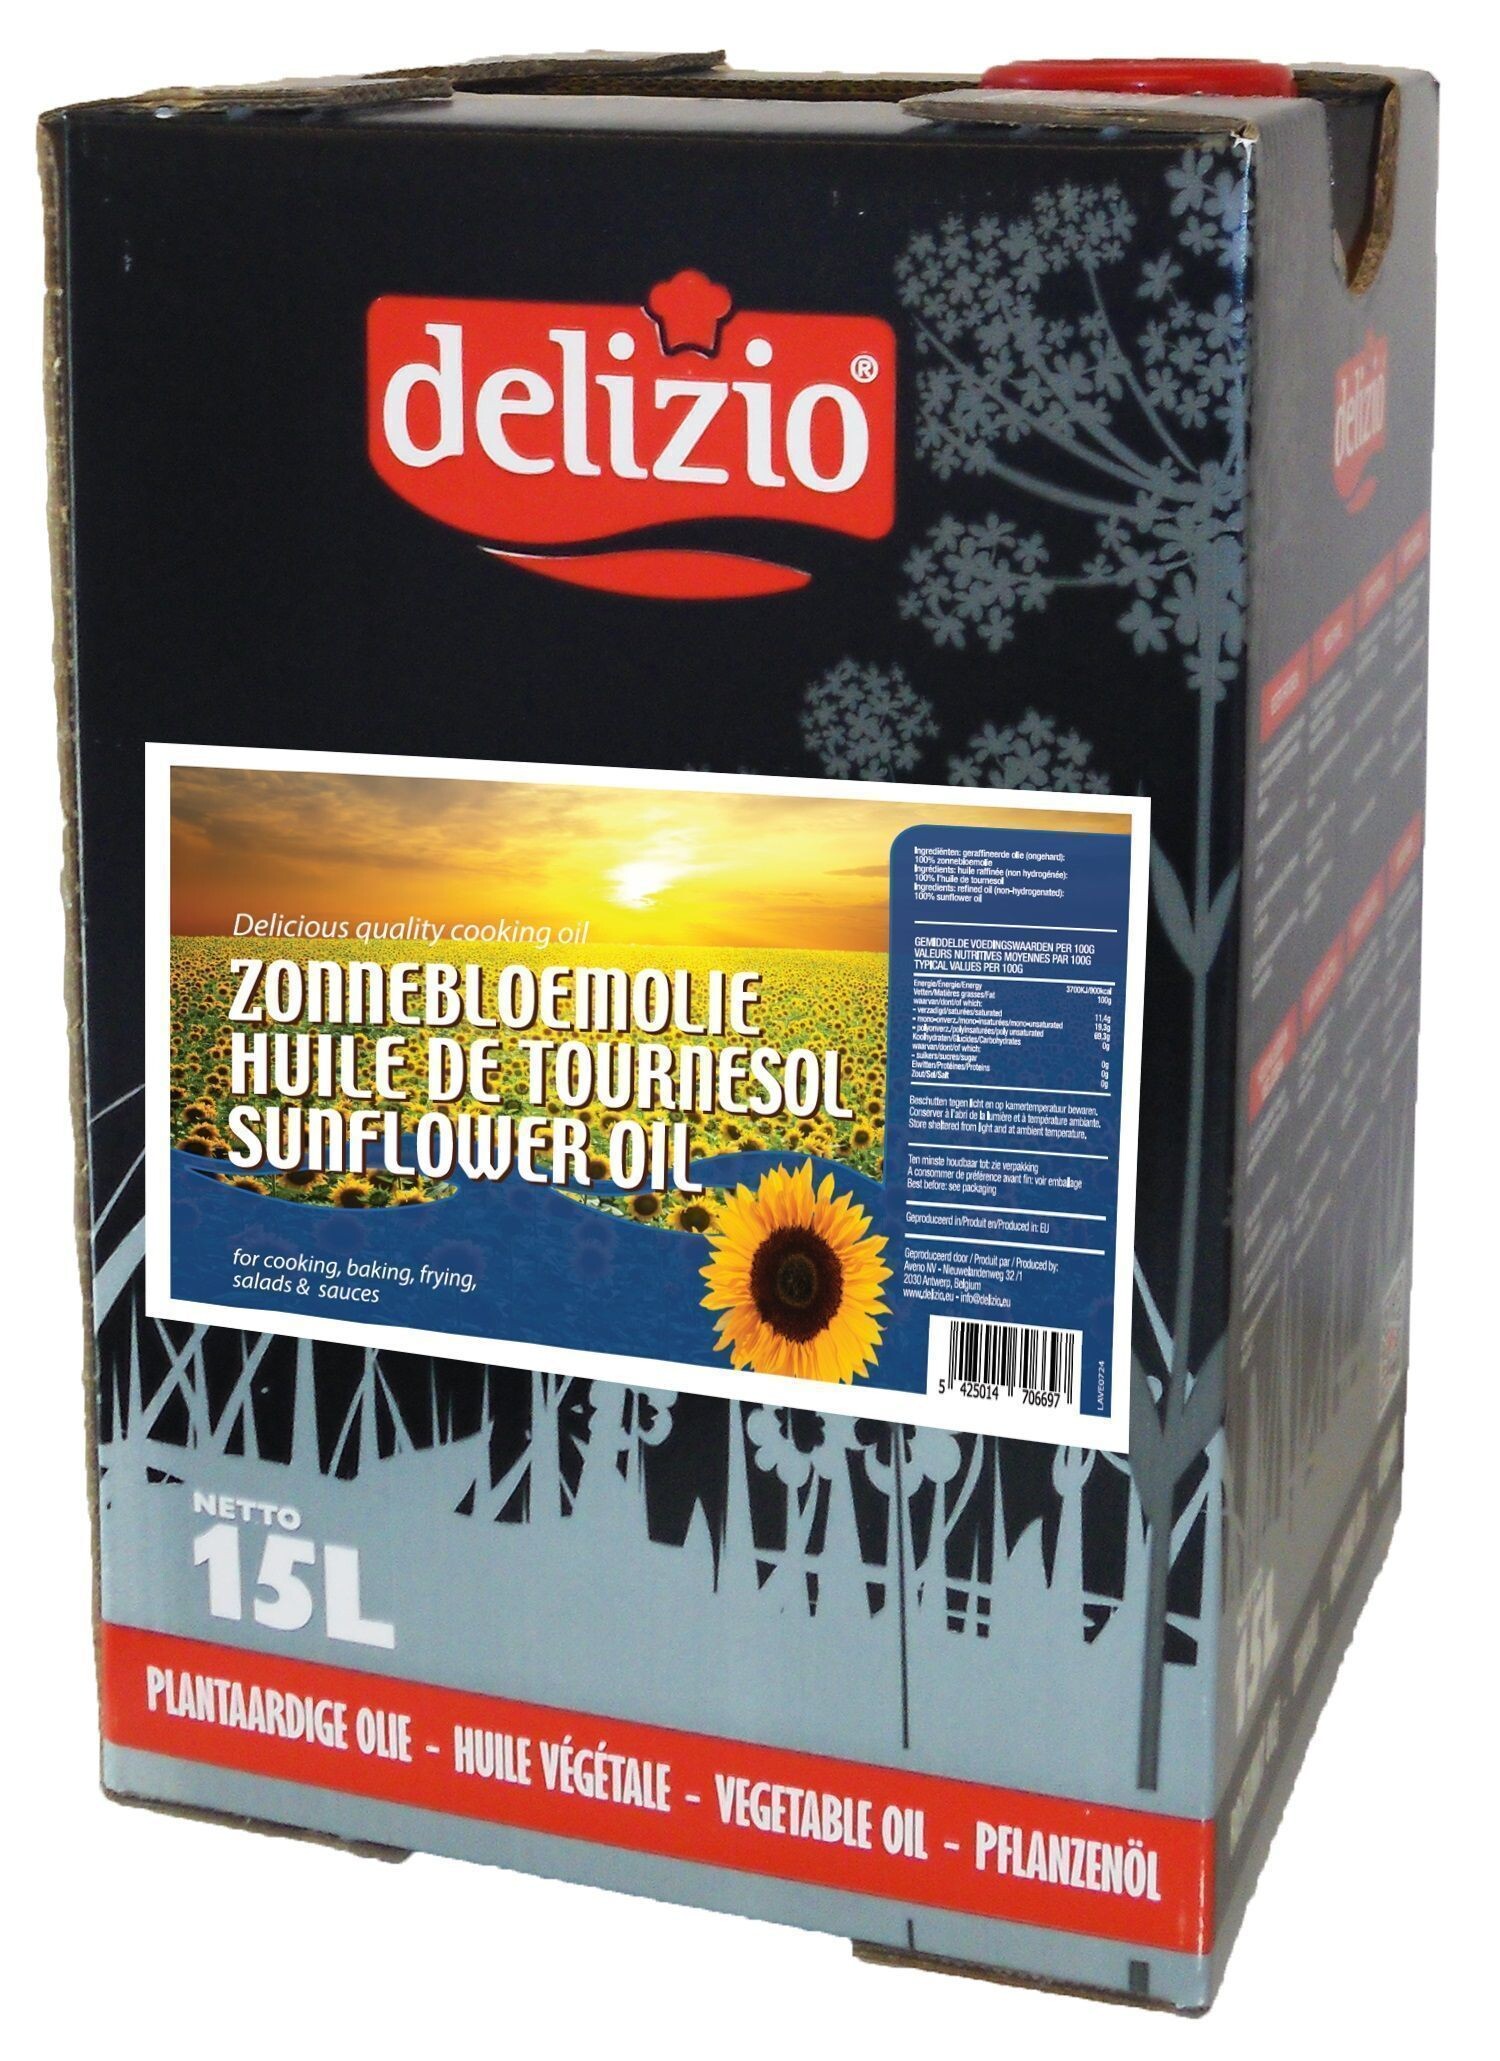 Delizio Sunflower oil 15L Can in Box